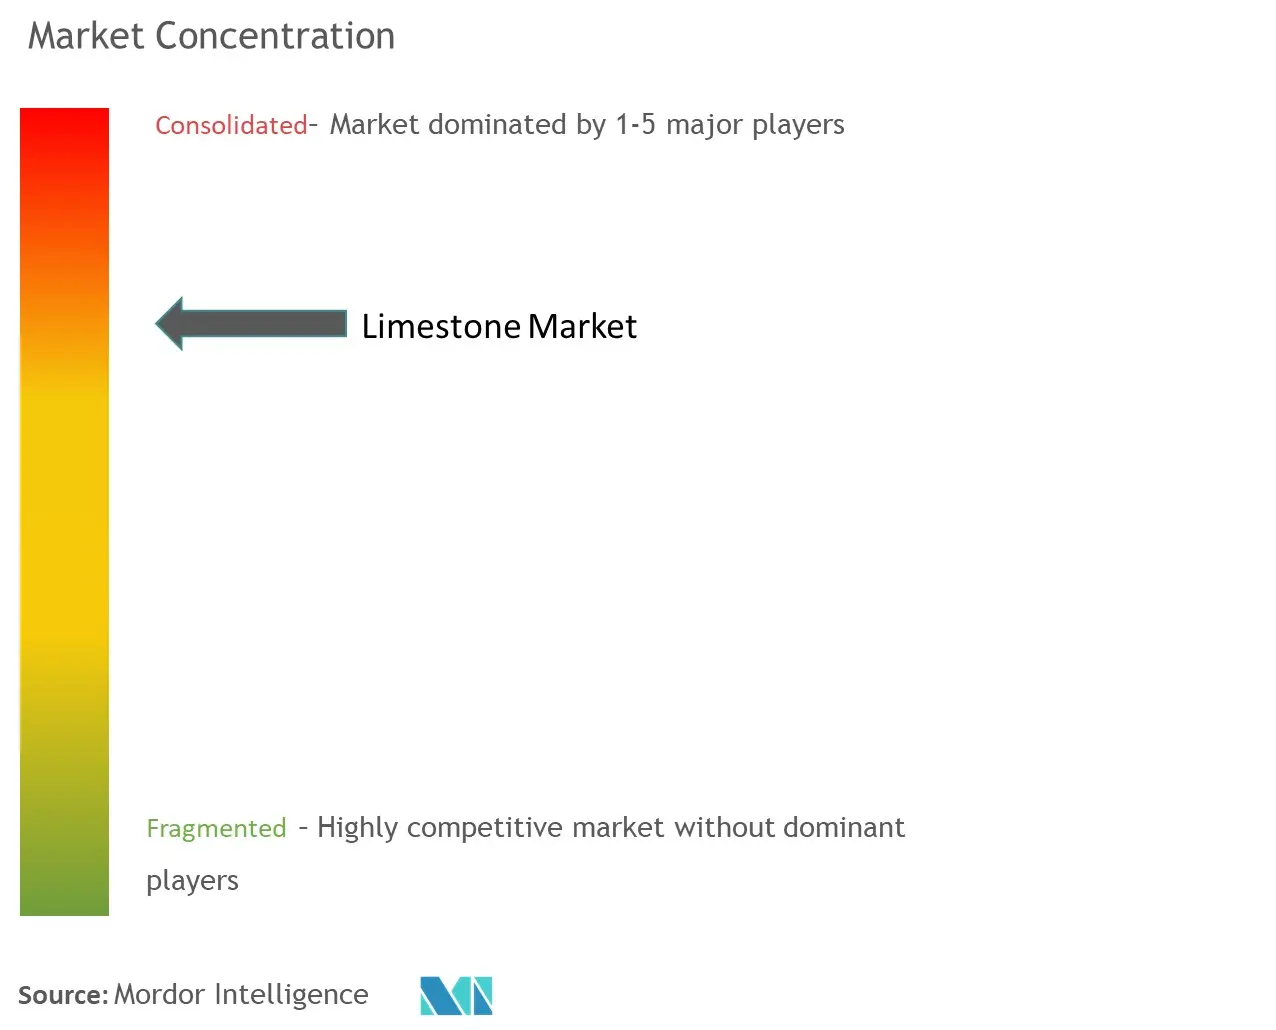 Limestone Market Concentartion